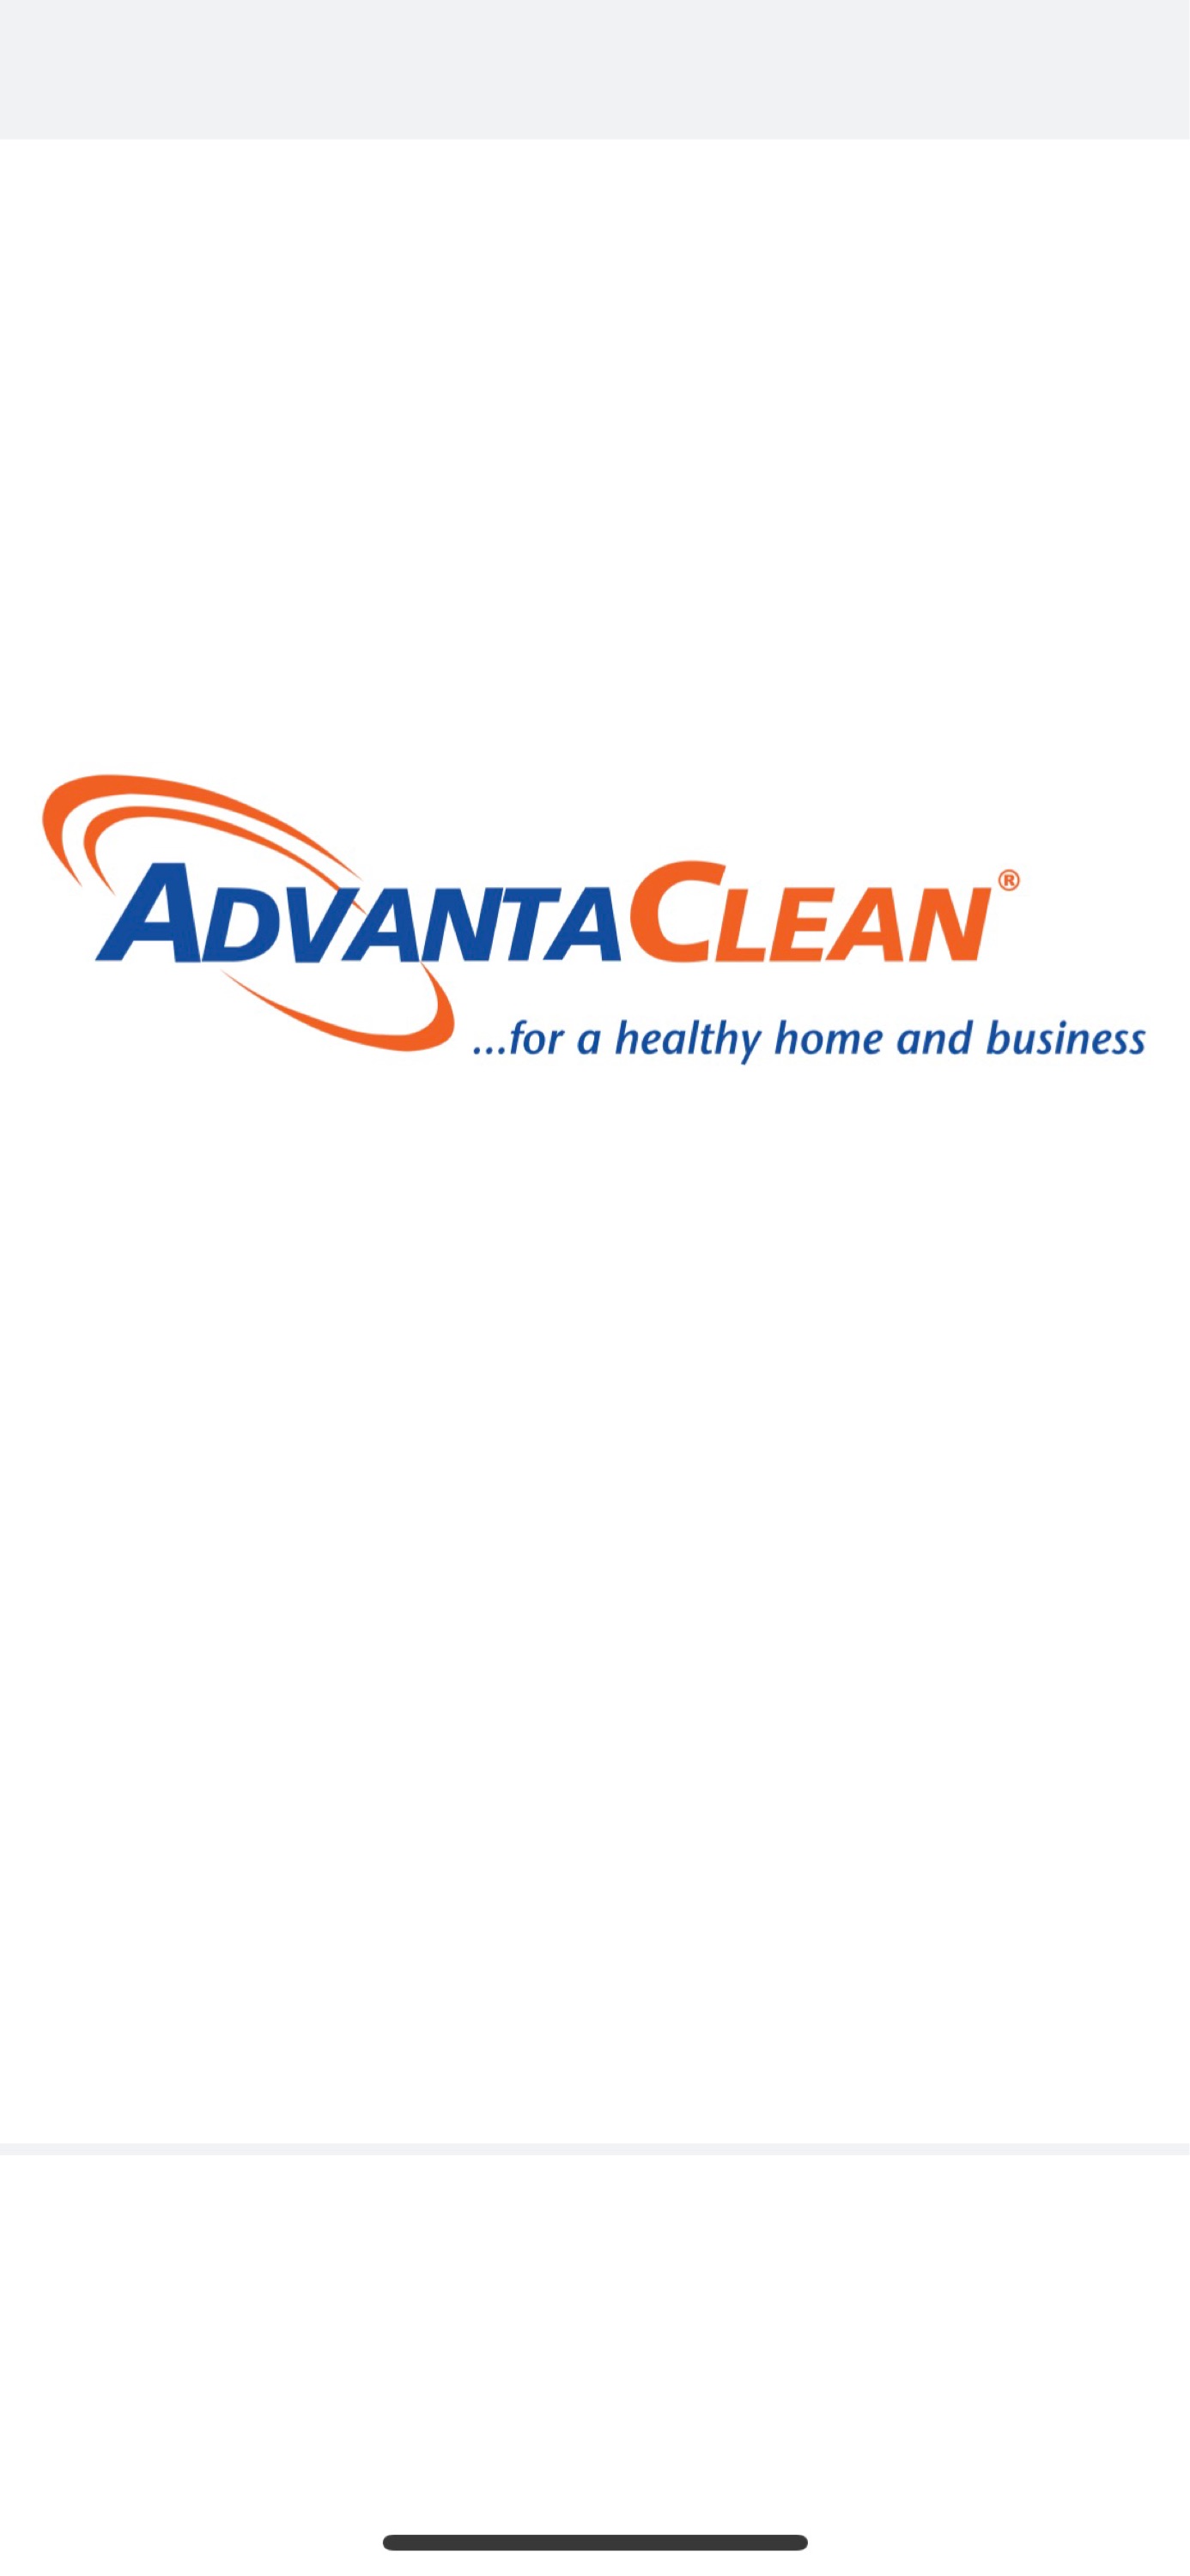 AdvantaClean of Oklahoma City Logo